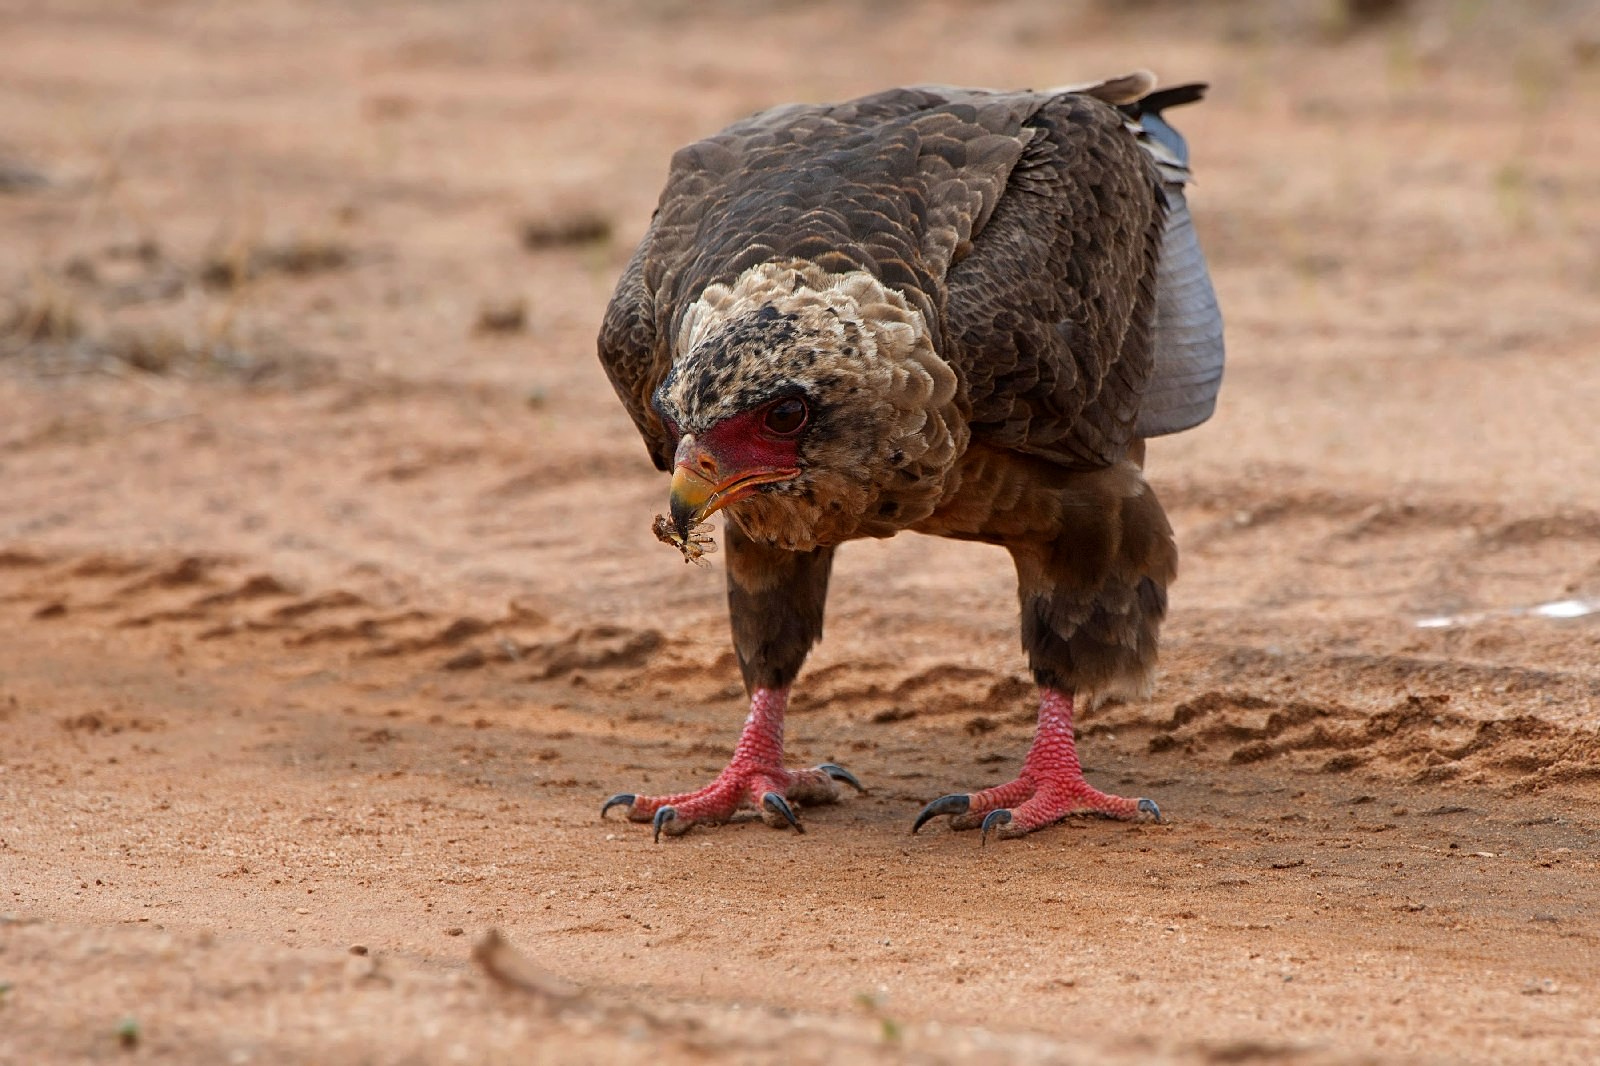 Falcon juggler with prey...